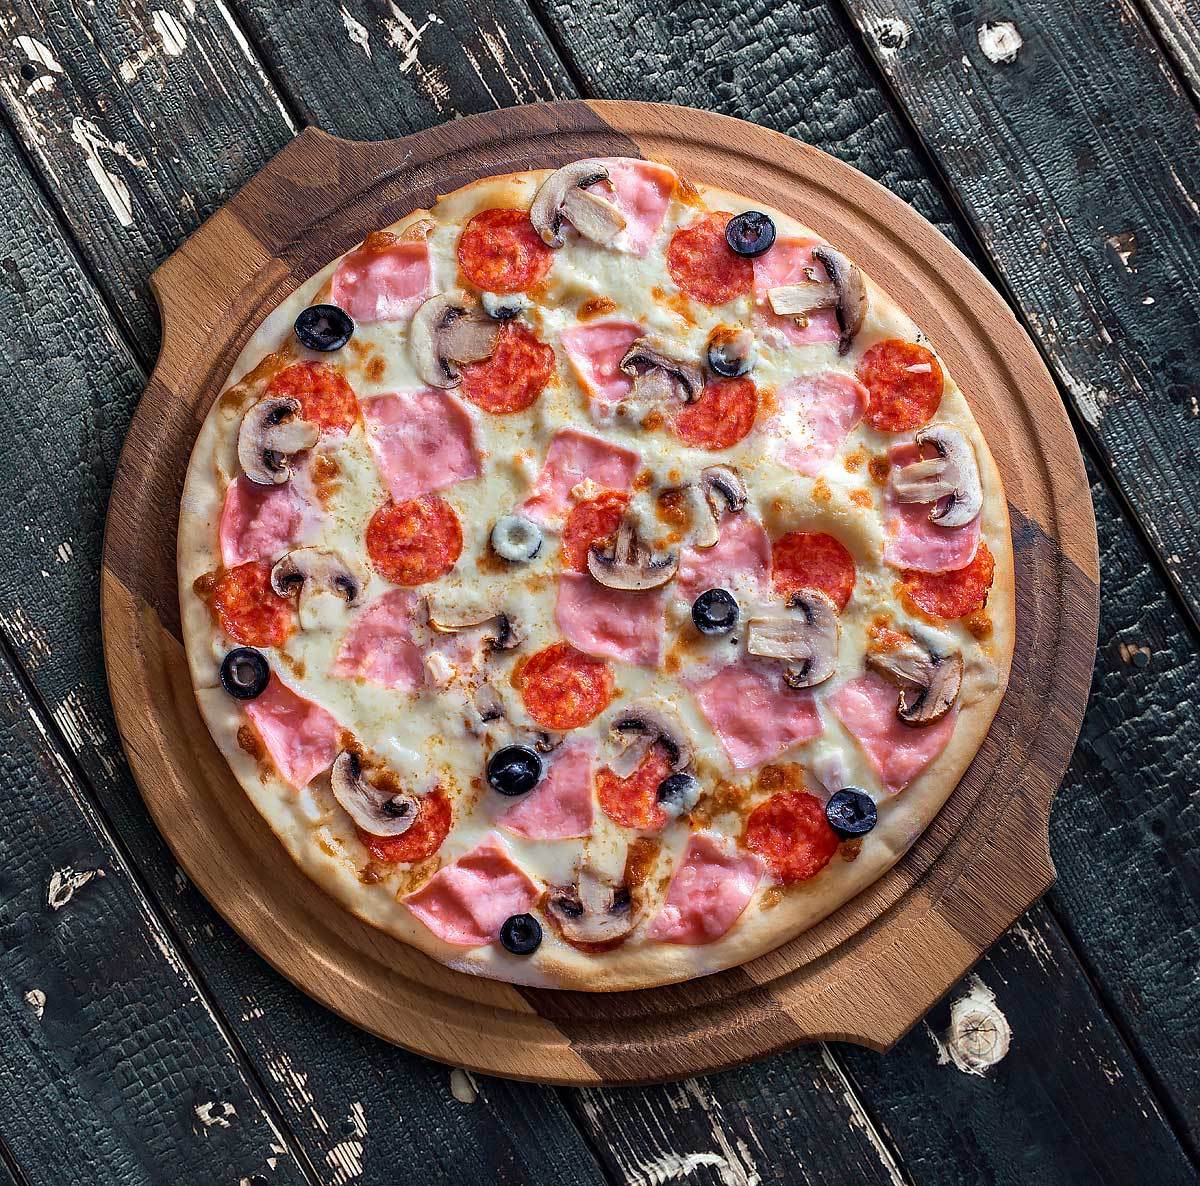 хорошая пицца отличная пицца аромат соуса пробуждает страсти пепперони и сыр на равные части фото 87